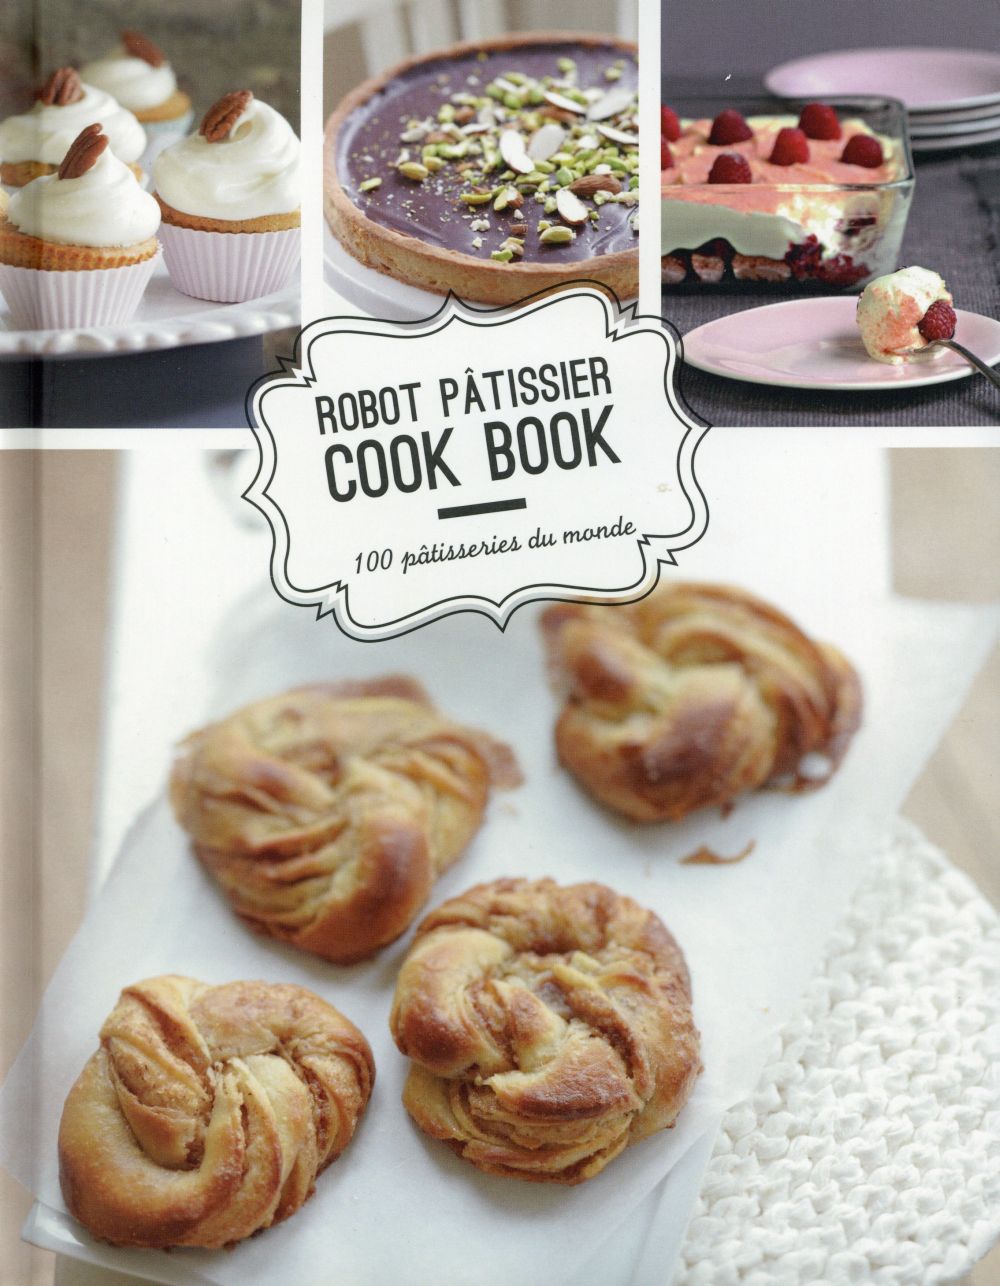 Robot pâtissier cook book ; 100 pâtisserie du monde